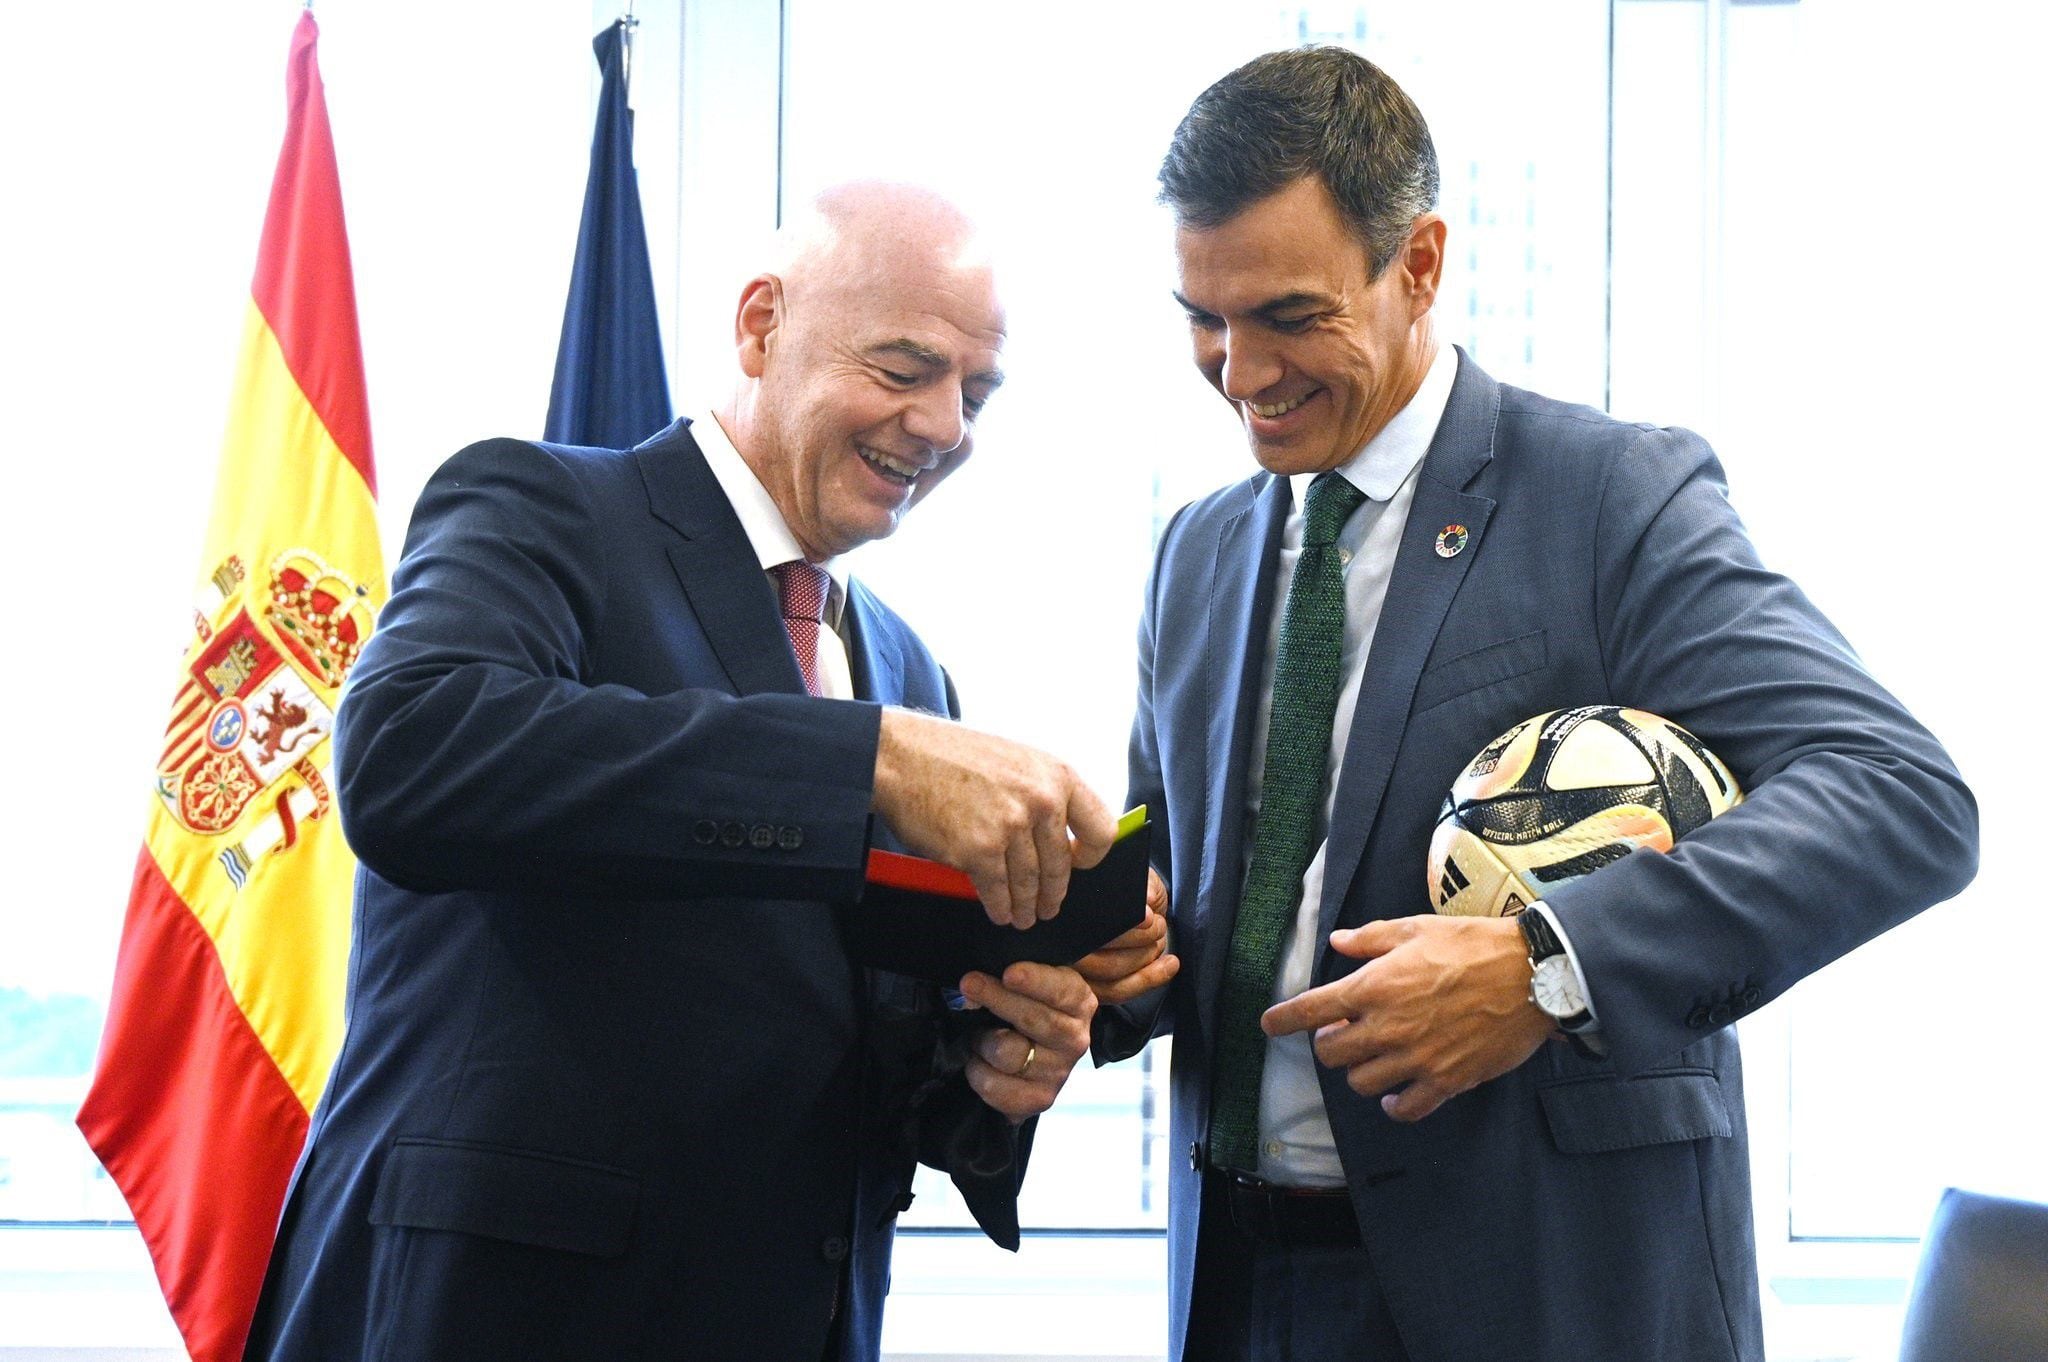 Hace unas semanas, Infantino se reunió con Pedro Sánchez, el presidente del Gobierno español. Ahora, se confirmó que el país ibérico será sede del evento en 2030 con Portugal y Marruecos (@SANCHEZCASTEJON) 